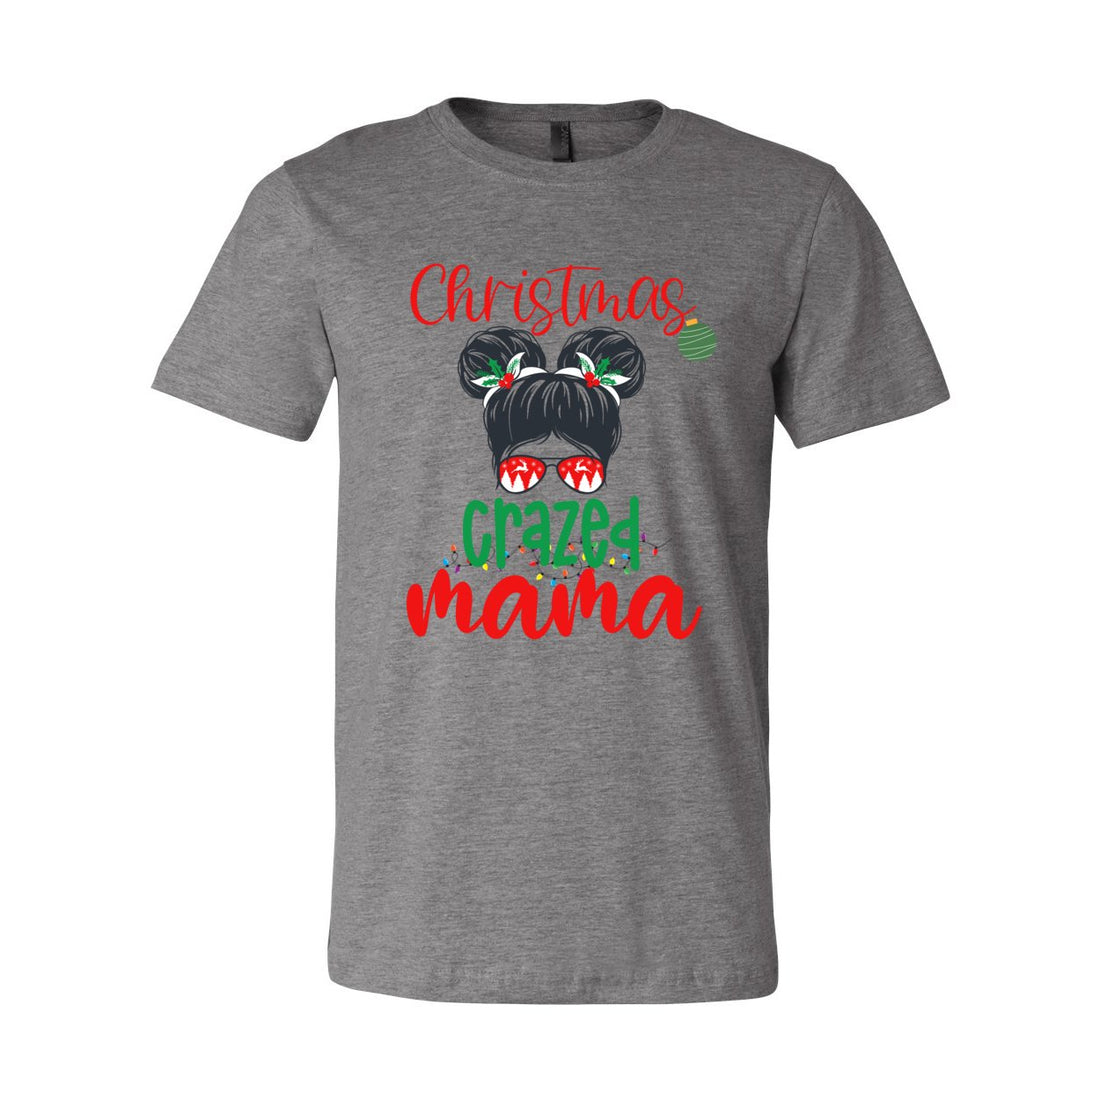 Christmas Crazed Mama - T-Shirts - Positively Sassy - Christmas Crazed Mama